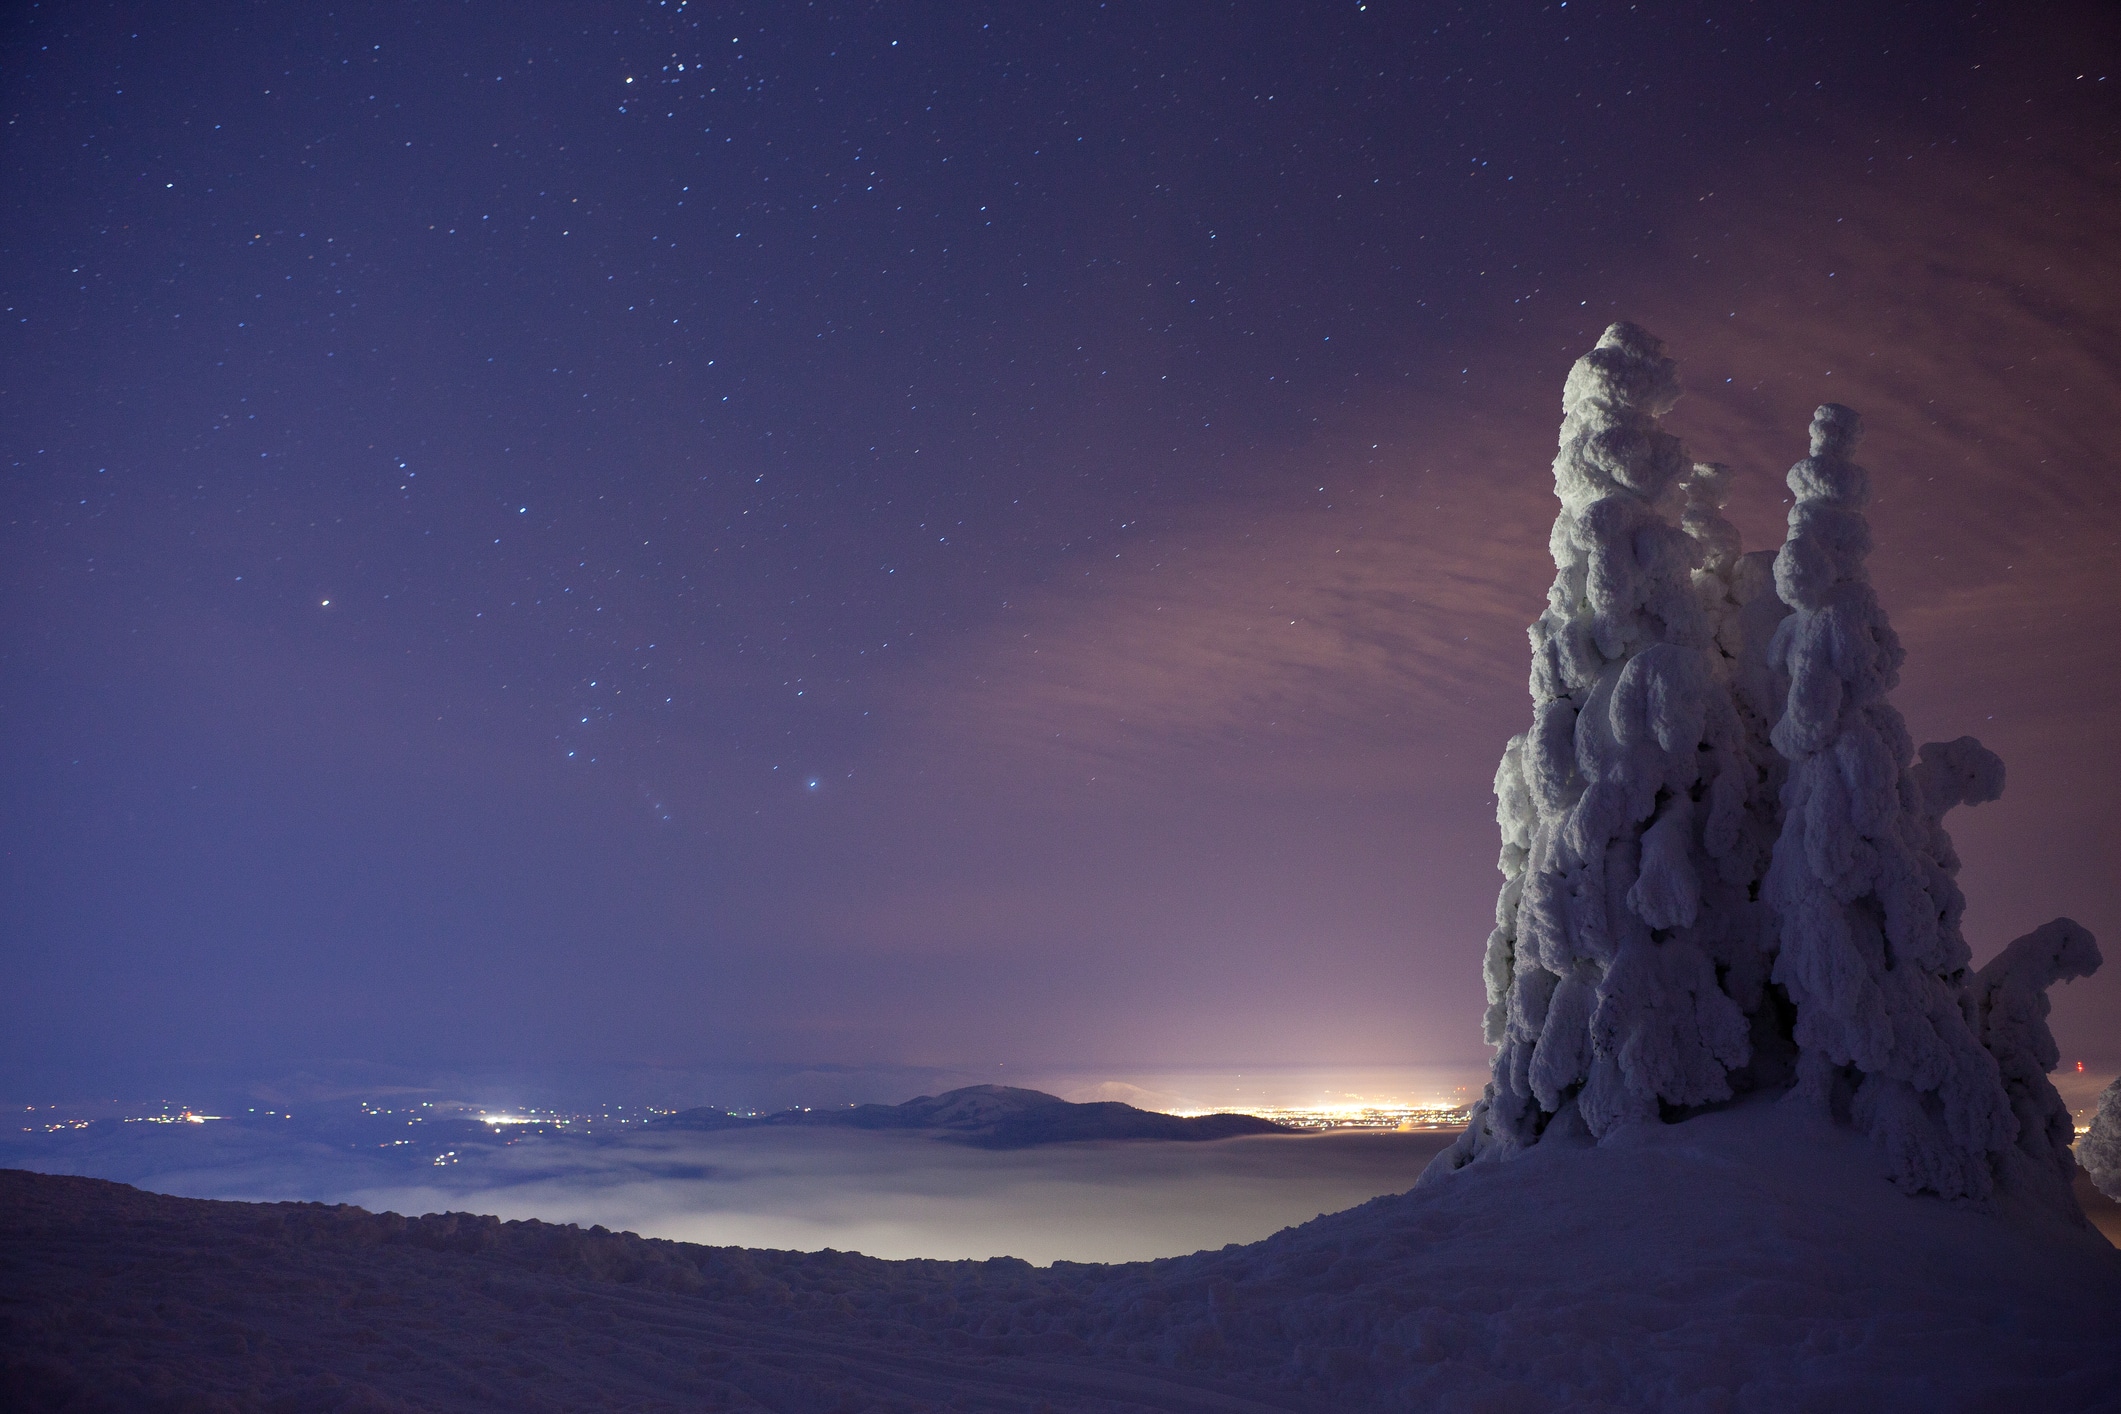 Winter Night on Mt Spokane